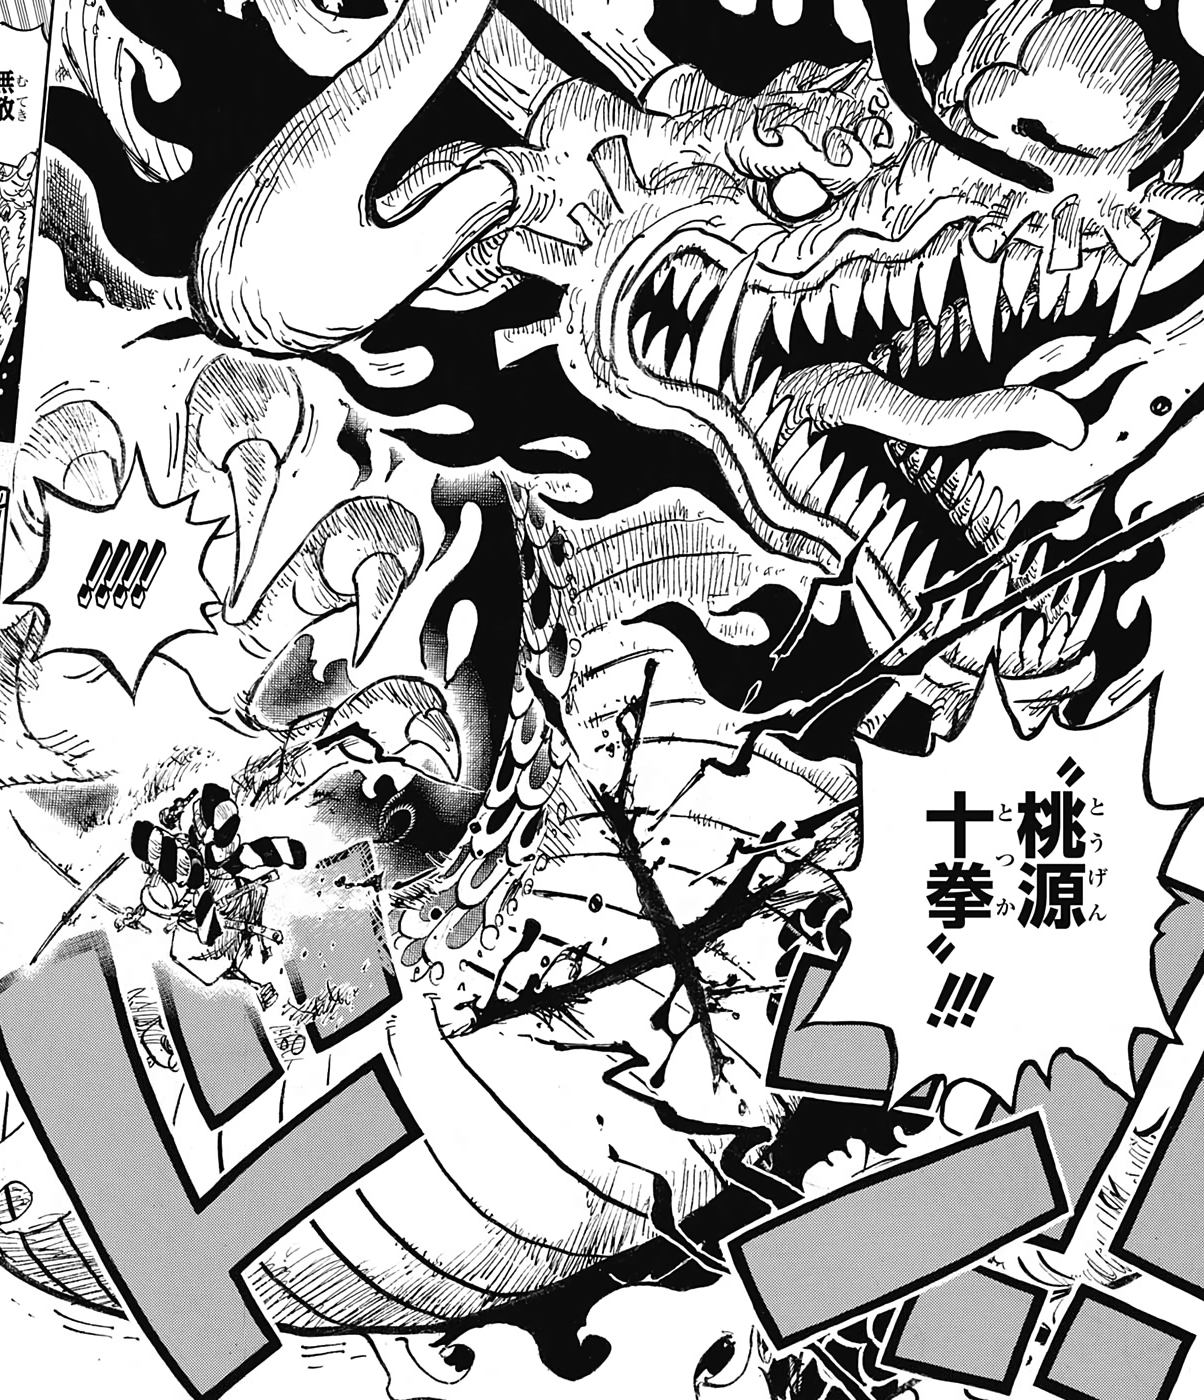 Ame no Habakiri: Ame no Habakiri là một trong những thanh kiếm huyền thoại với khả năng đánh bại bất kỳ thứ gì. Được sử dụng bởi nhân vật Oden trong anime One Piece, thanh kiếm này mang một sức mạnh và uy lực khó tin. Nếu bạn yêu thích anime và những vật phẩm kỳ diệu, hãy tìm hiểu về Ame no Habakiri ngay nhé!